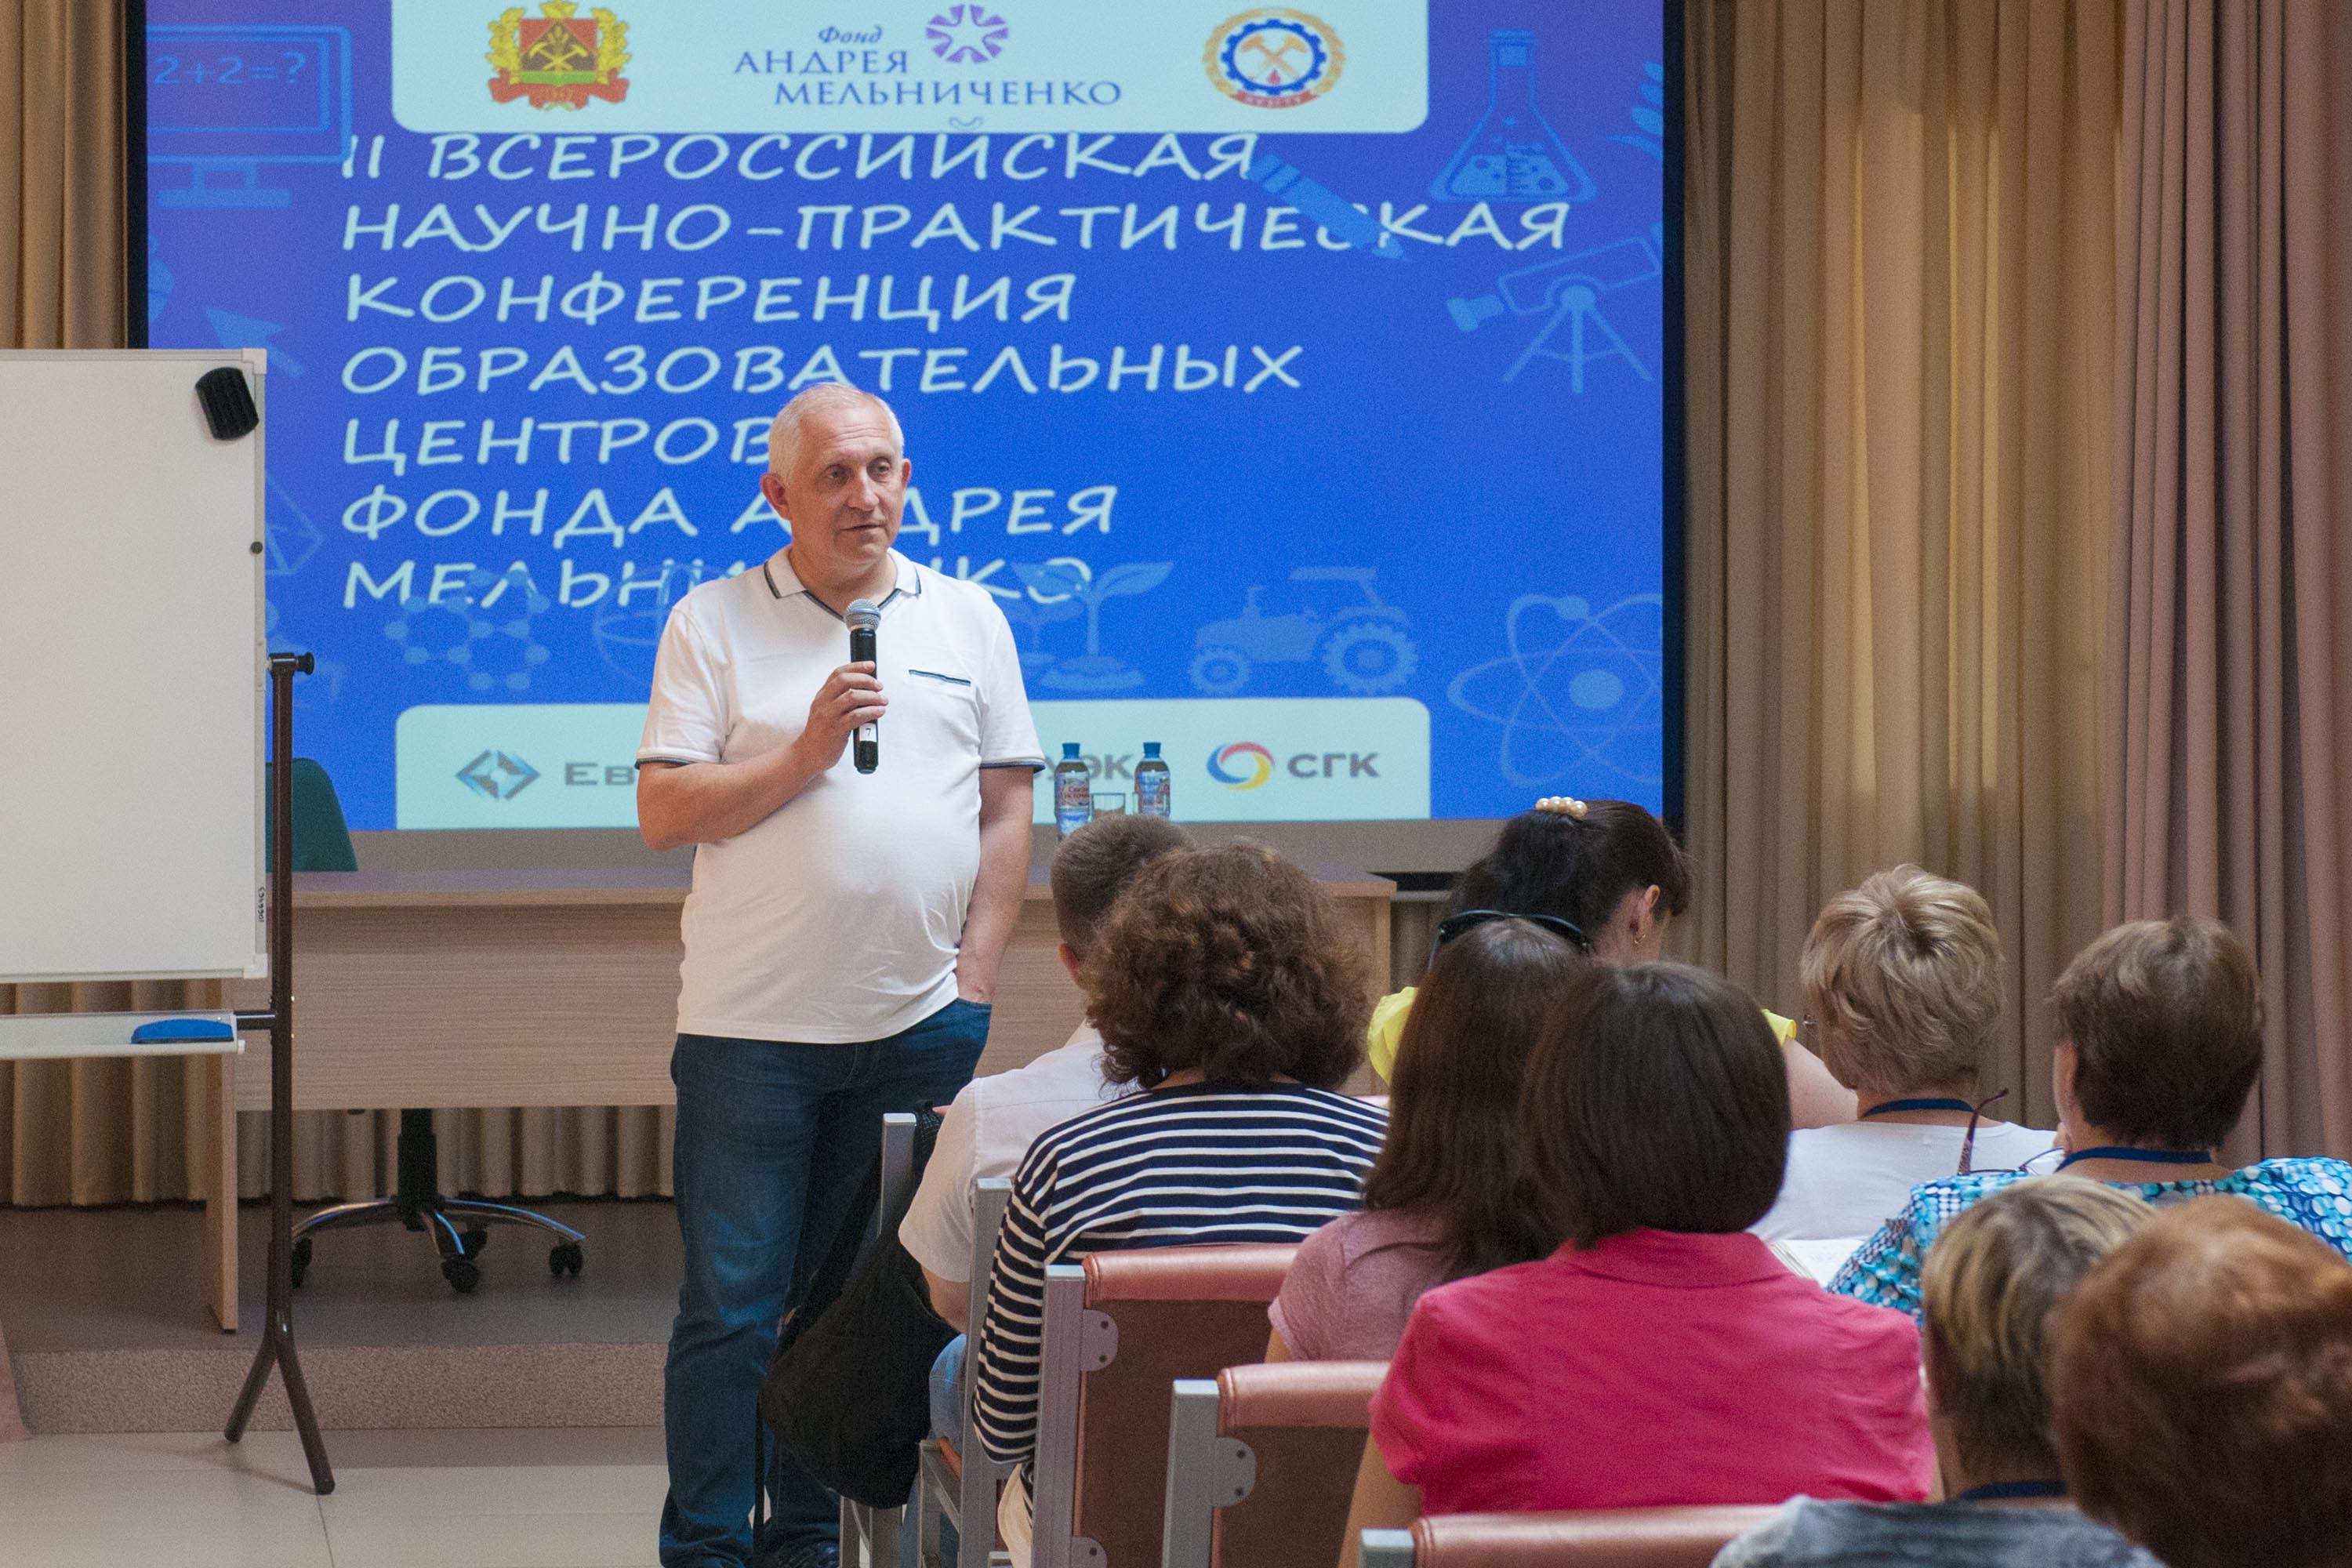 II Всероссийская научно-практическая конференция образовательных центров Фонда Андрея Мельниченко